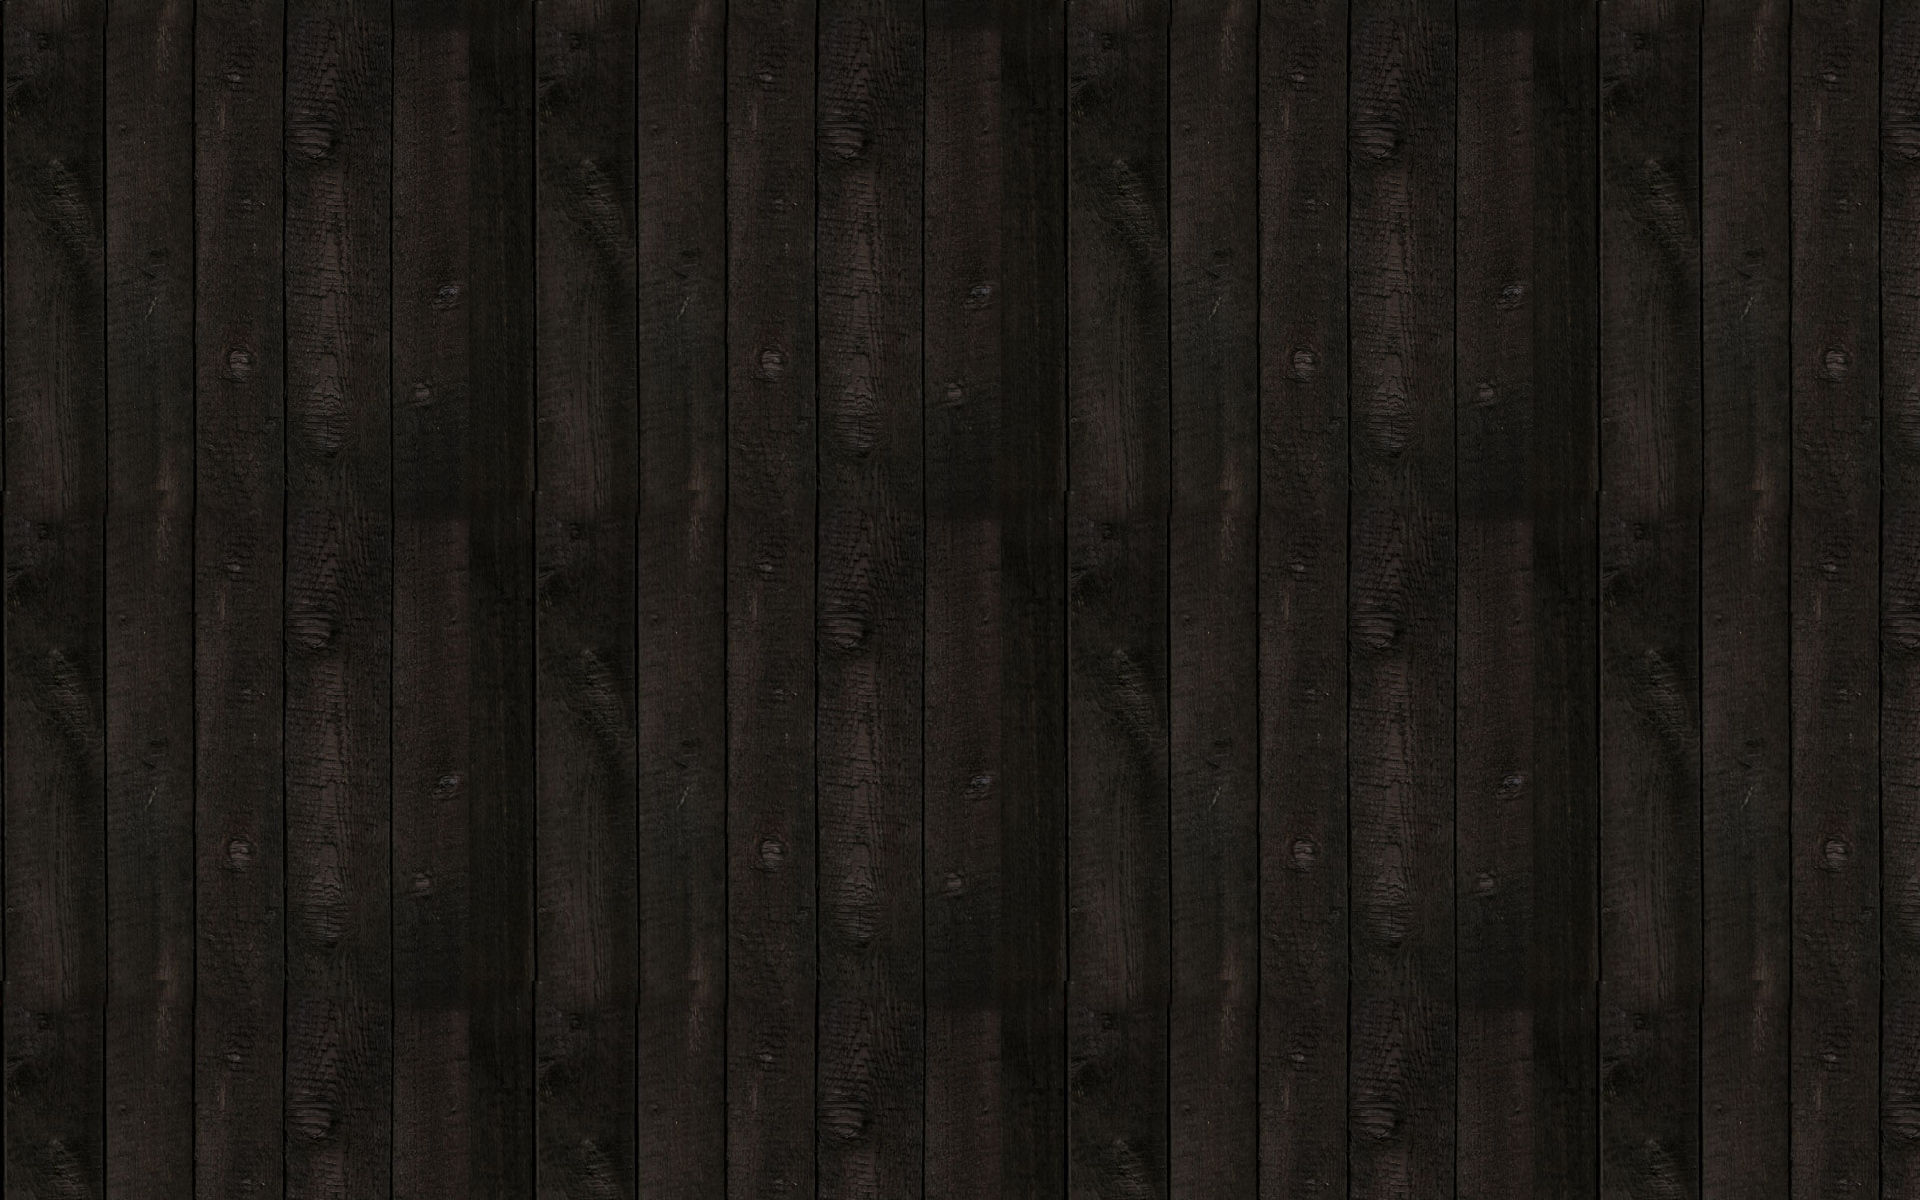 textures, wood panels - desktop wallpaper